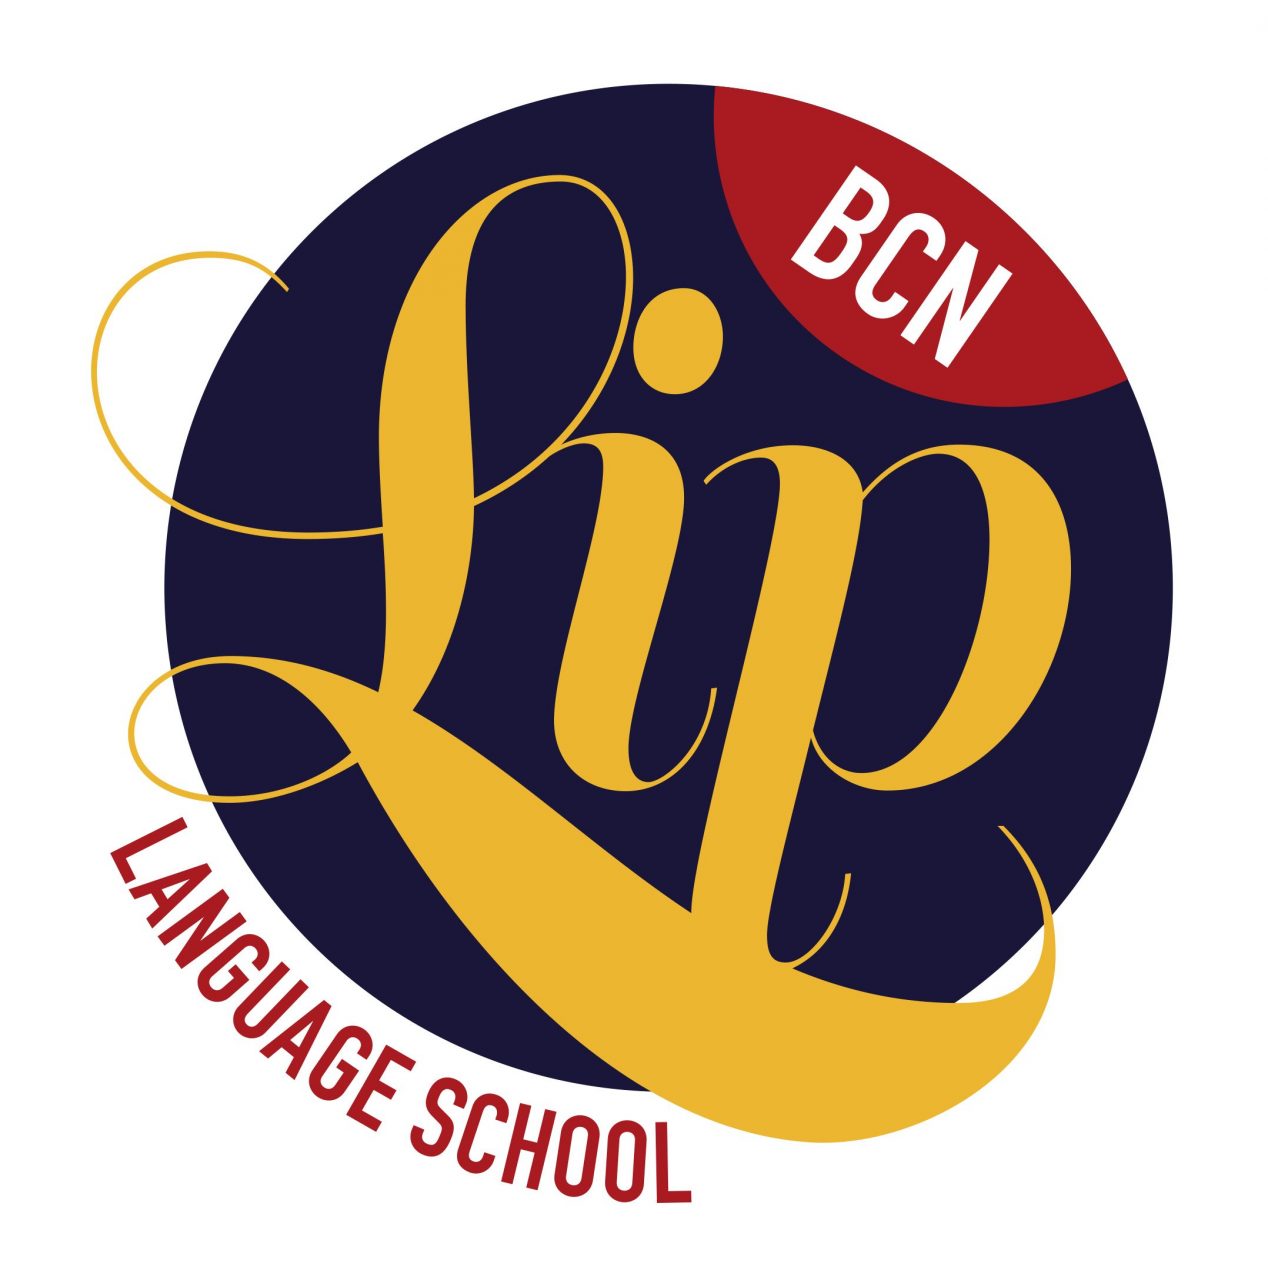 BCNLIP Language School